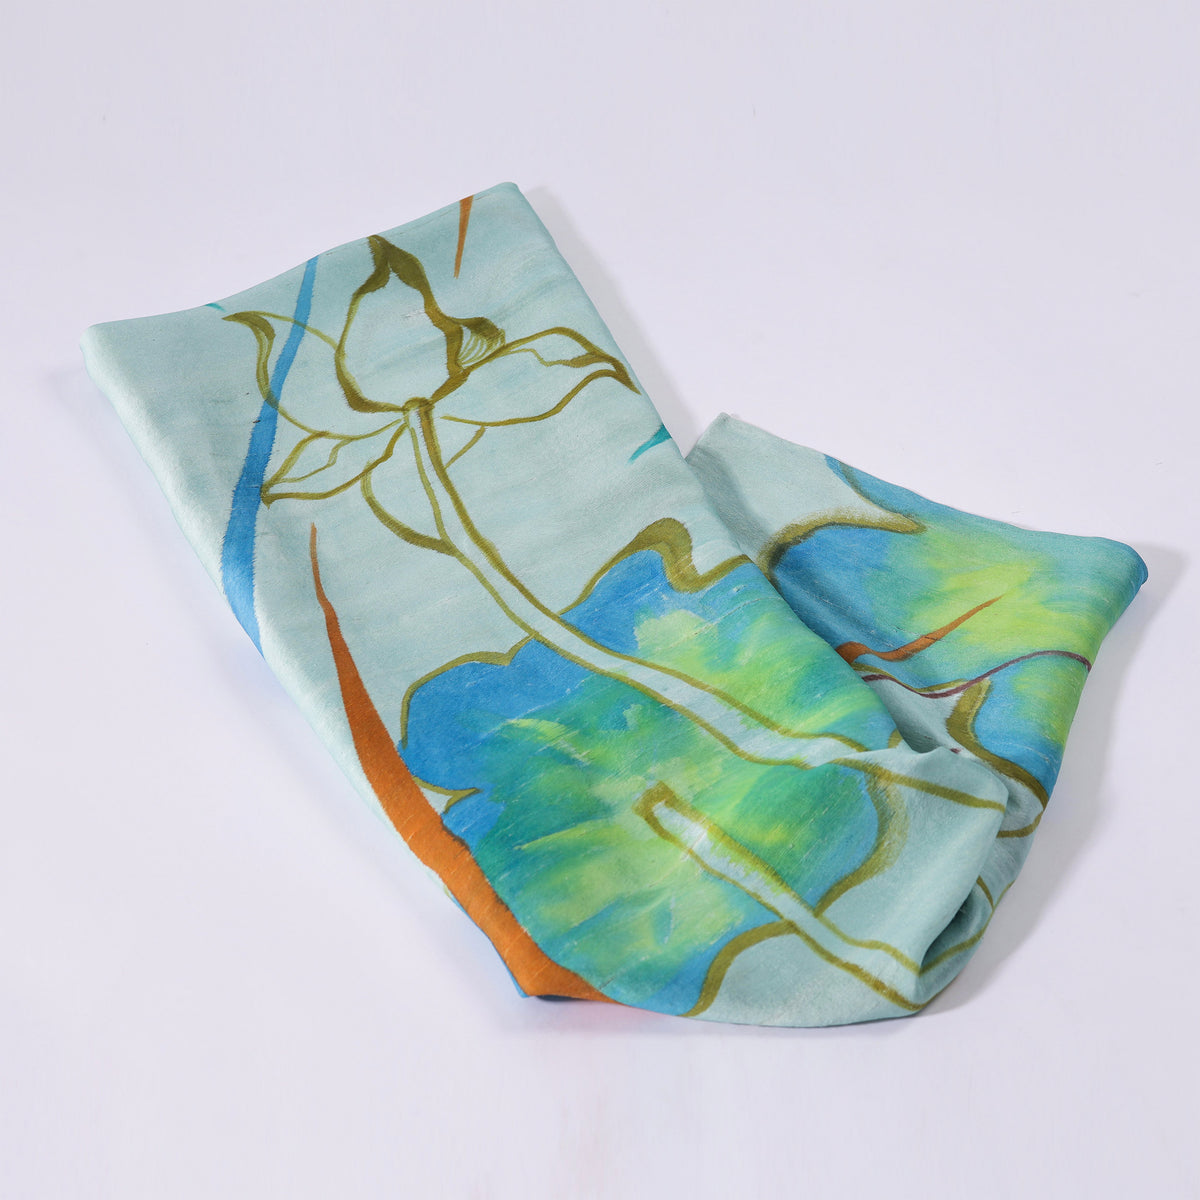 SEN - Lotus Hand-painted Tussah Silk Shawl 150